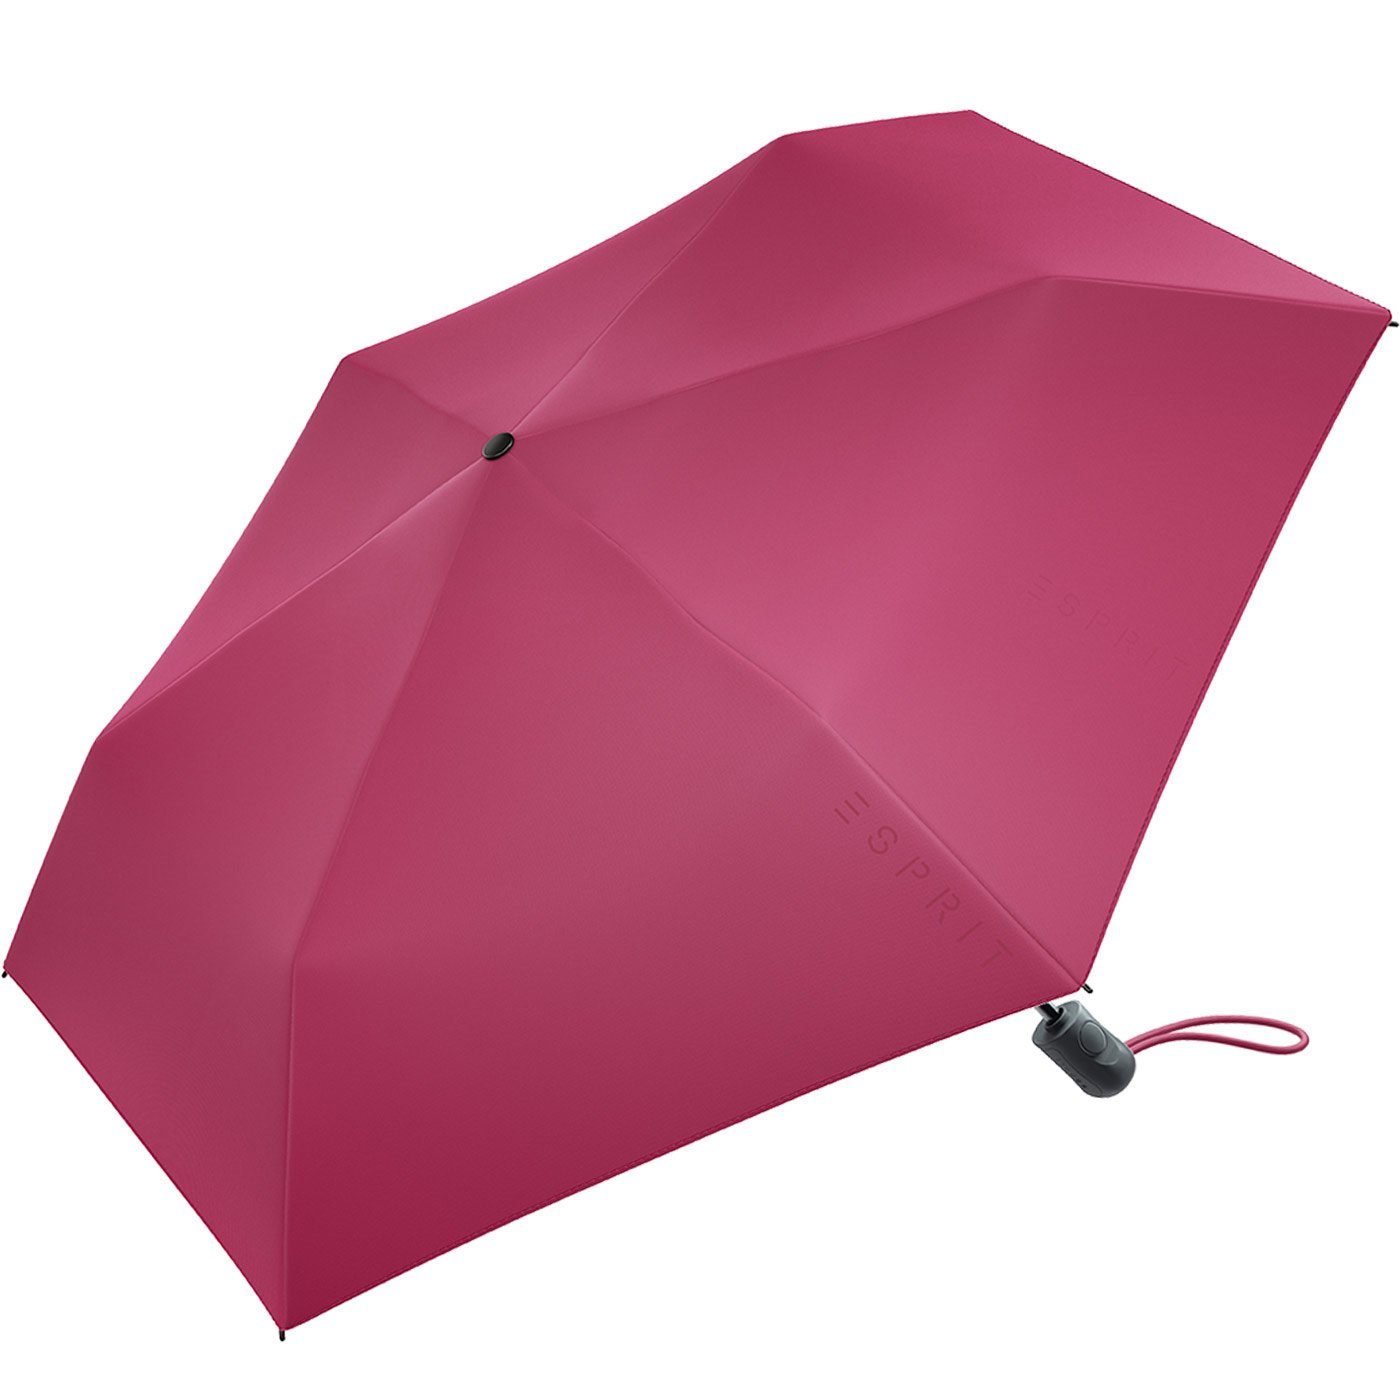 in stabil, vivacious Trendfarben Esprit Slimline Automatik - den 2022 neuen leicht, Damen Taschenregenschirm Easymatic pink, HW Auf-Zu